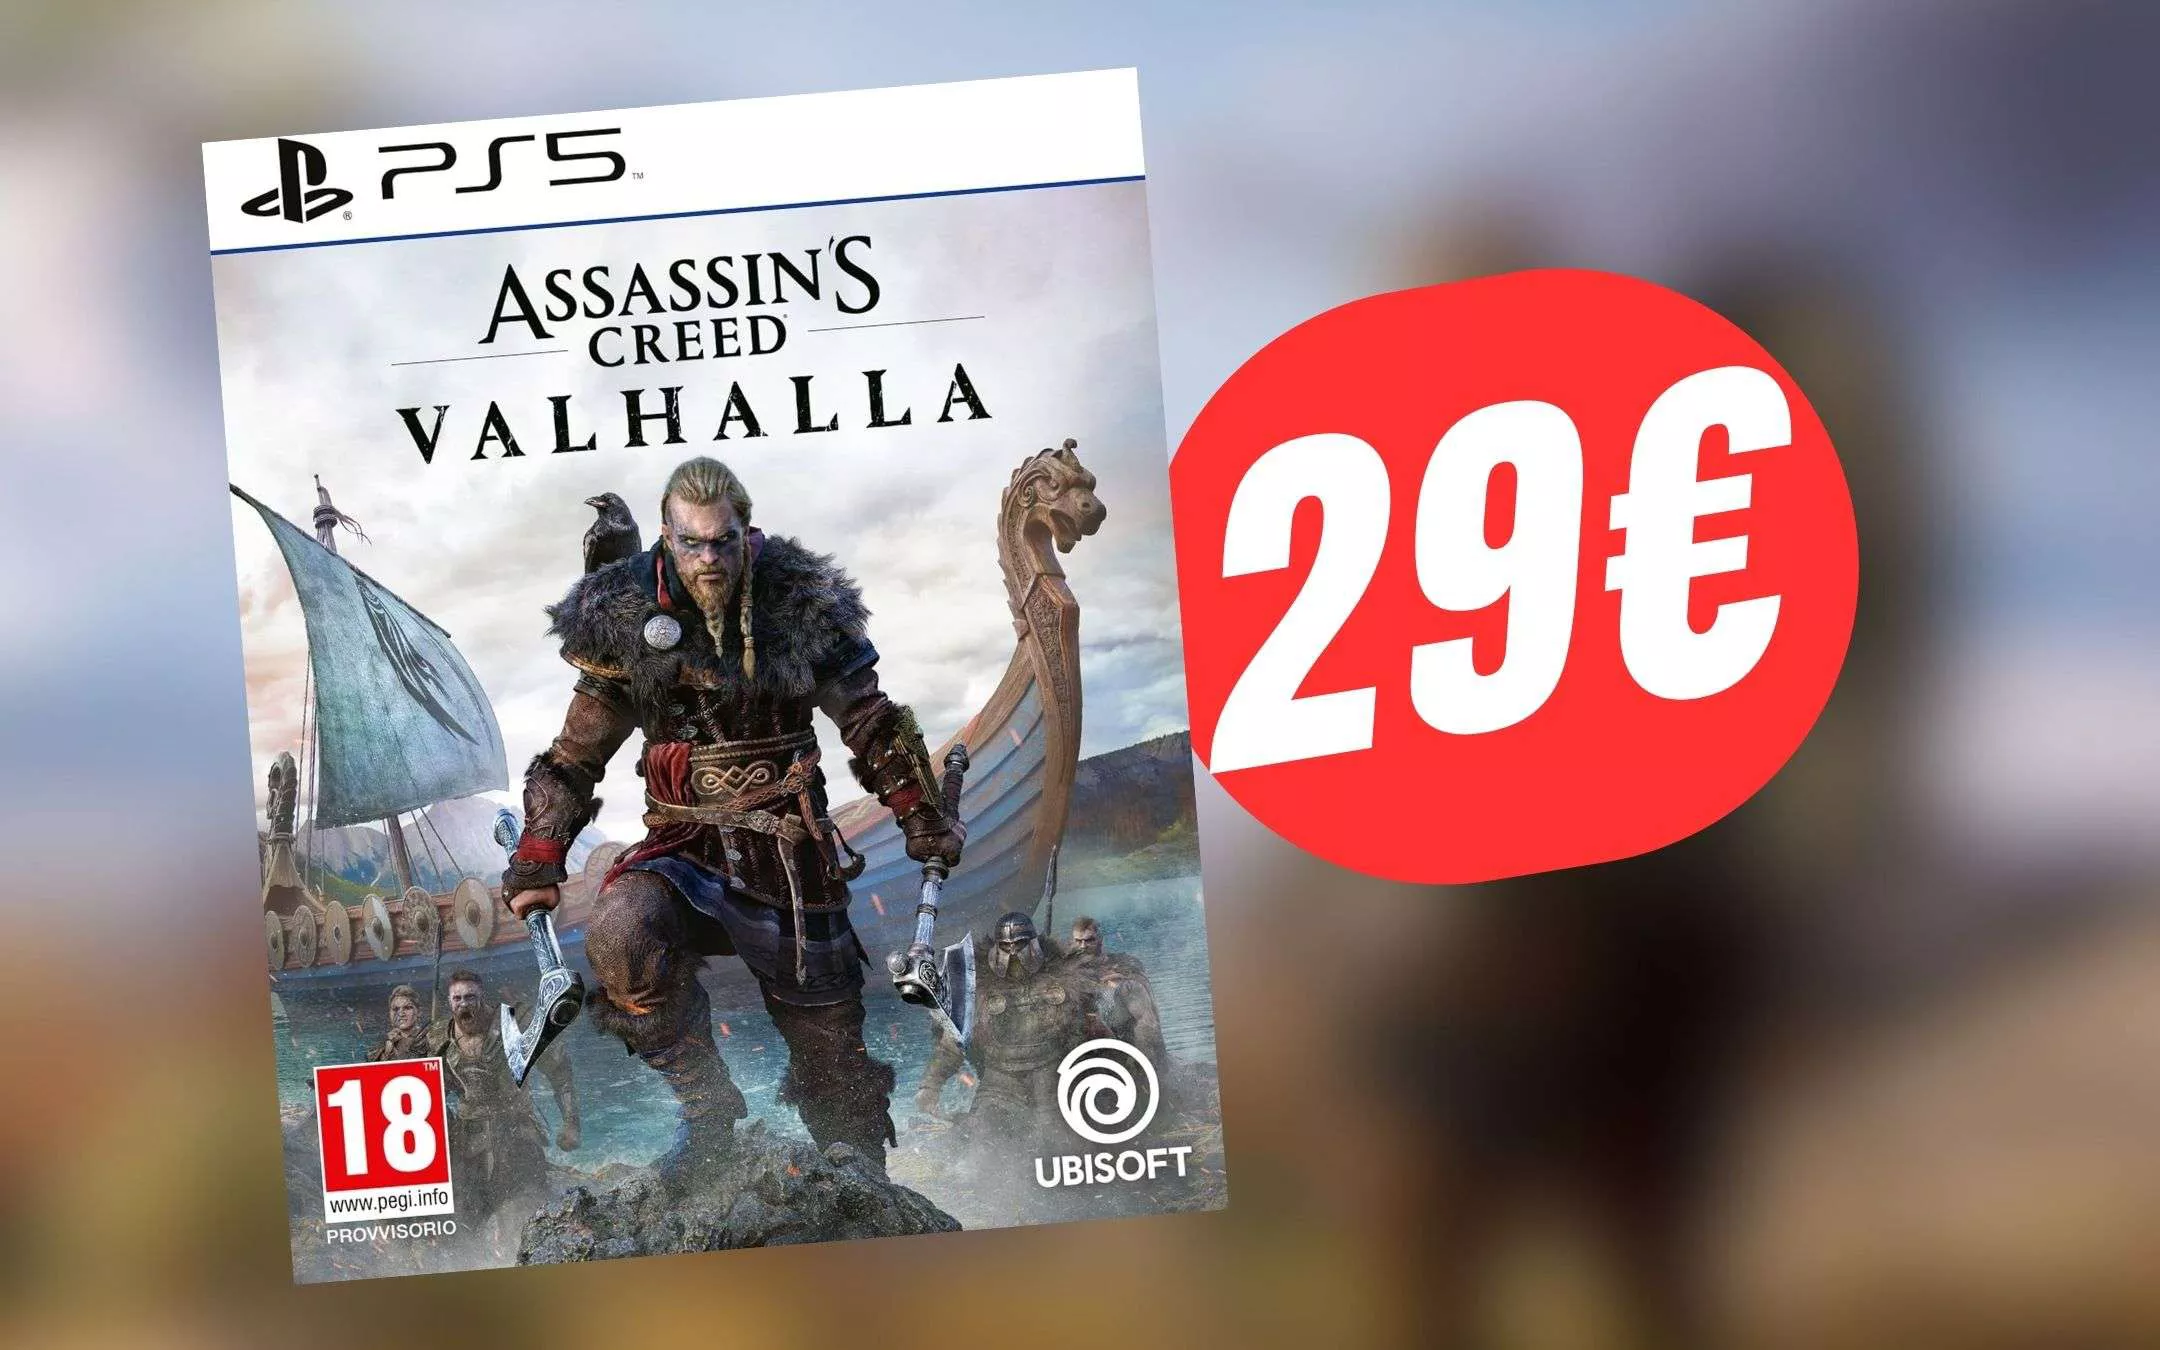 Assassin's Creed Valhalla per PS5 CROLLA a soli 29,98€ grazie a questo  SCONTO!